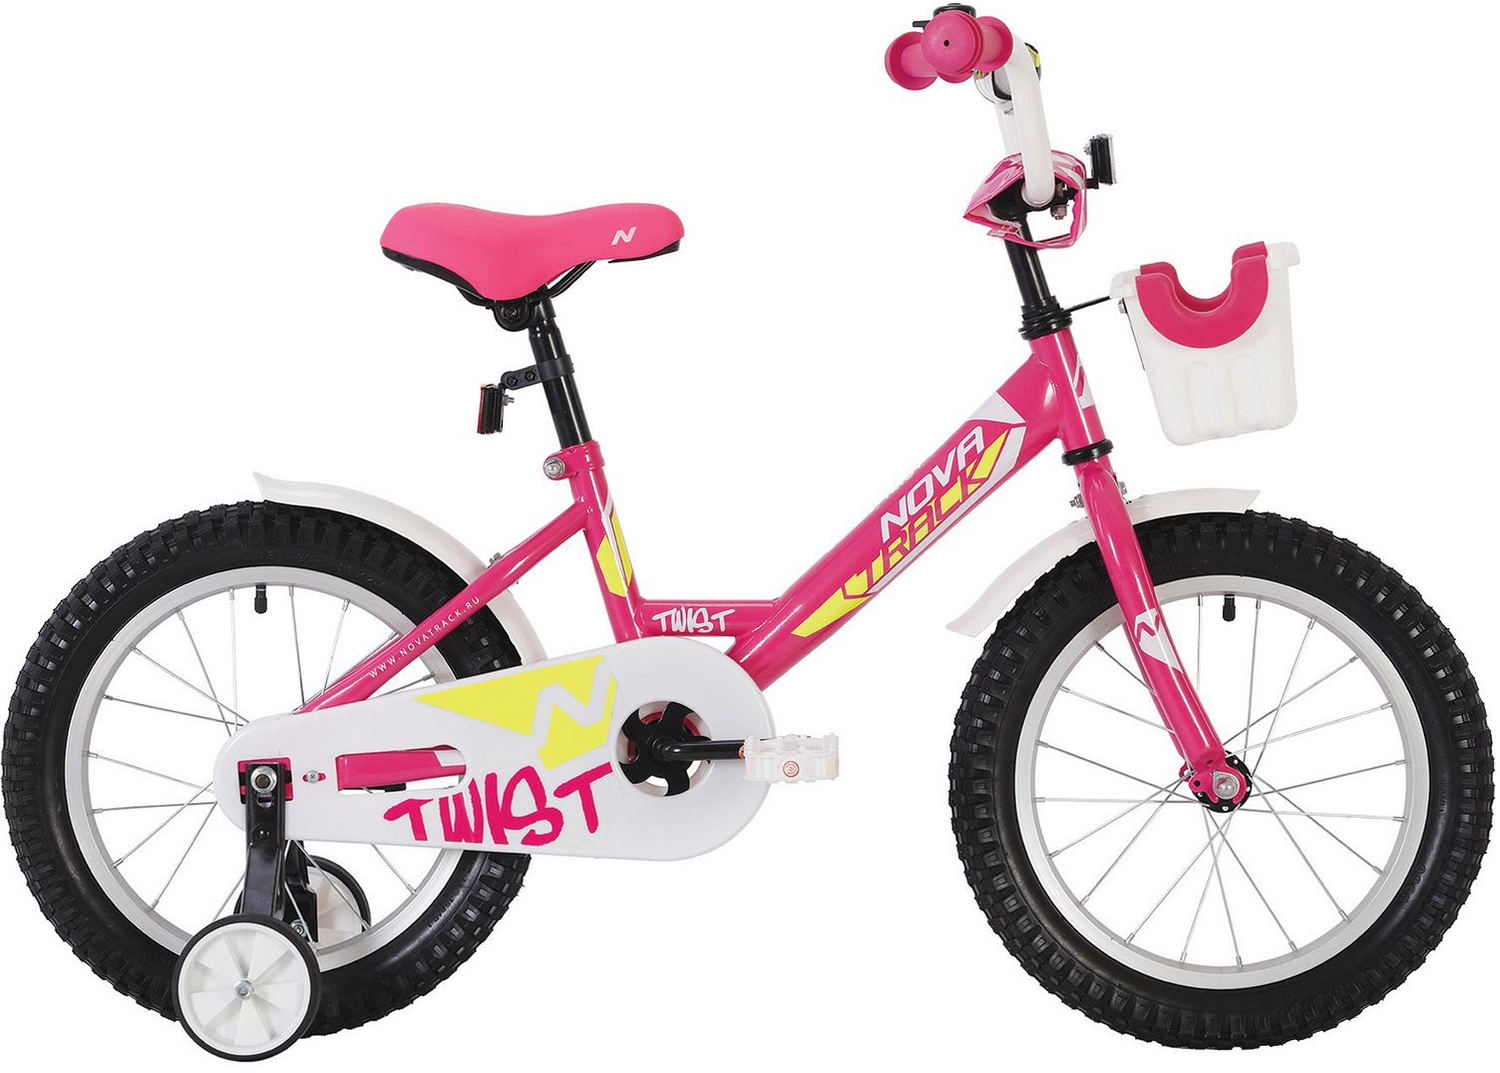  Отзывы о Детском велосипеде Novatrack Twist 20" с корзинкой 2020